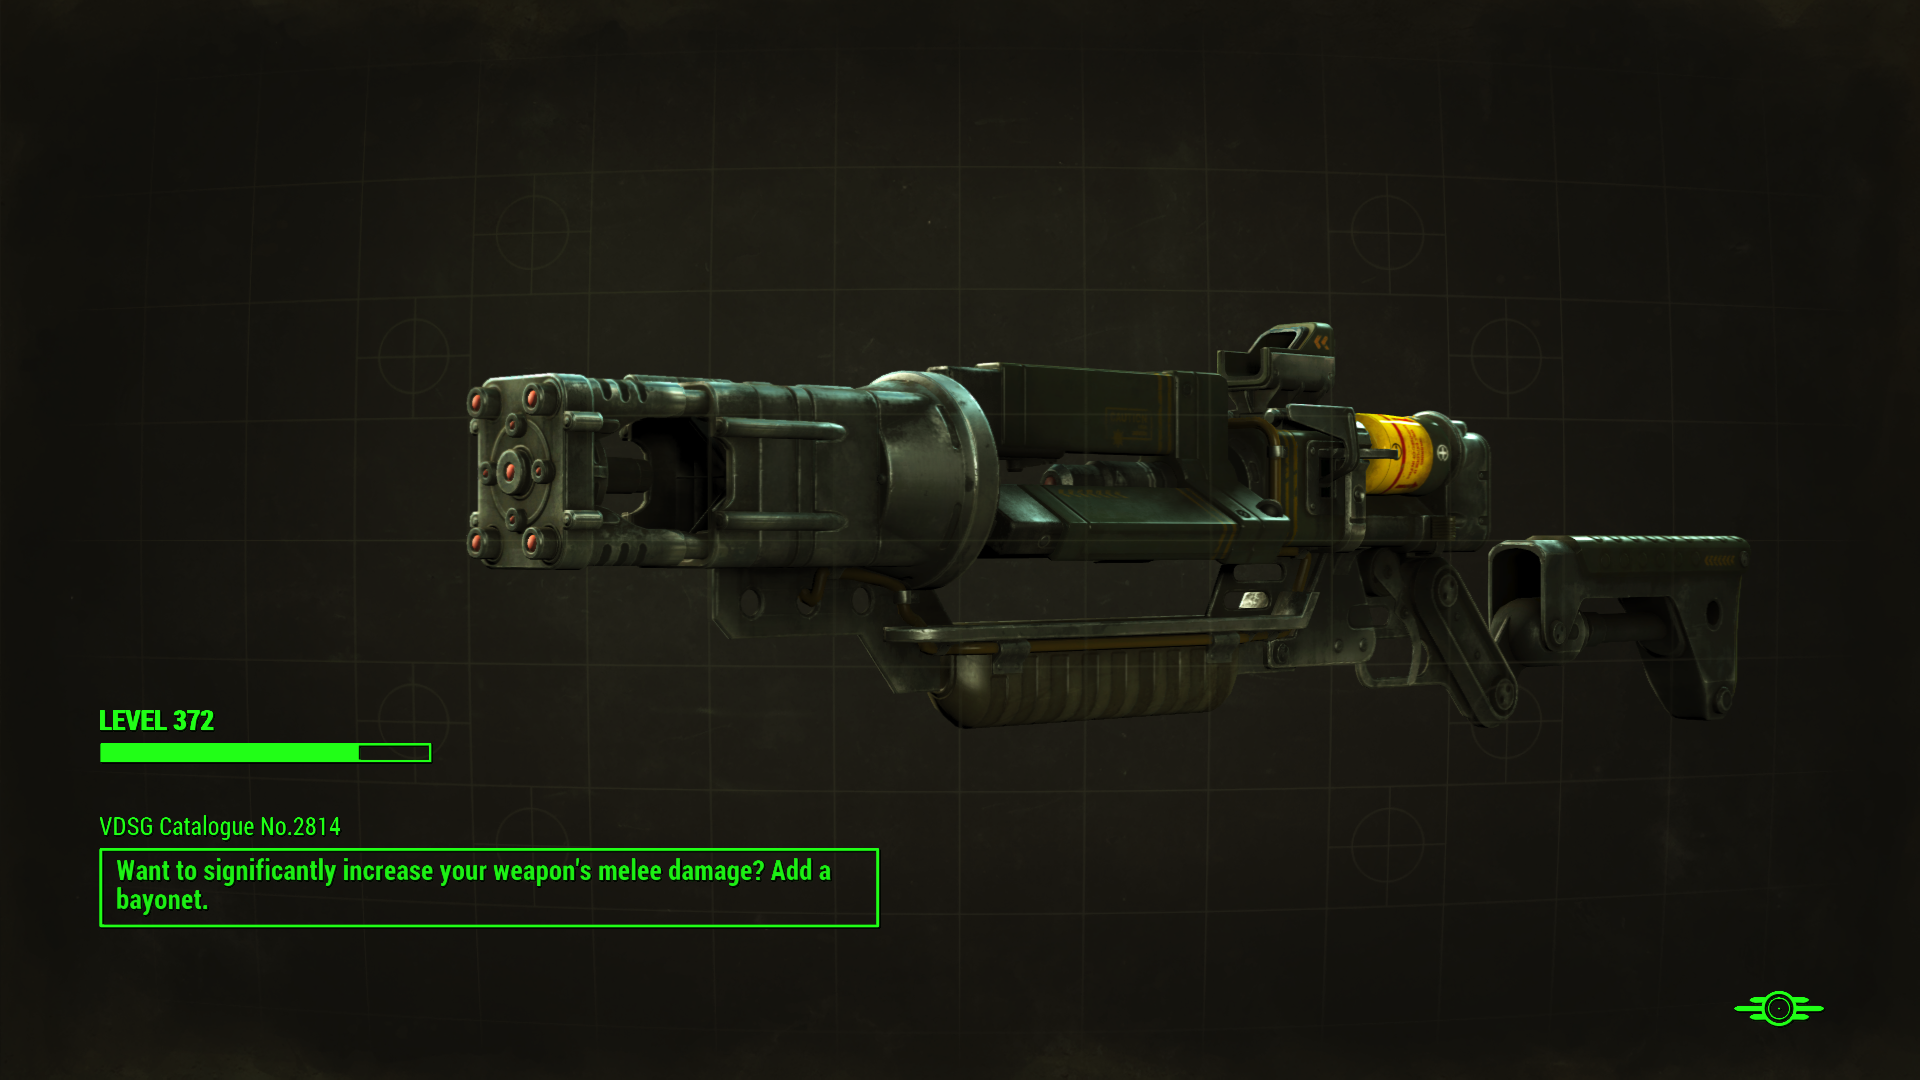 fallout 4 unique laser rifle